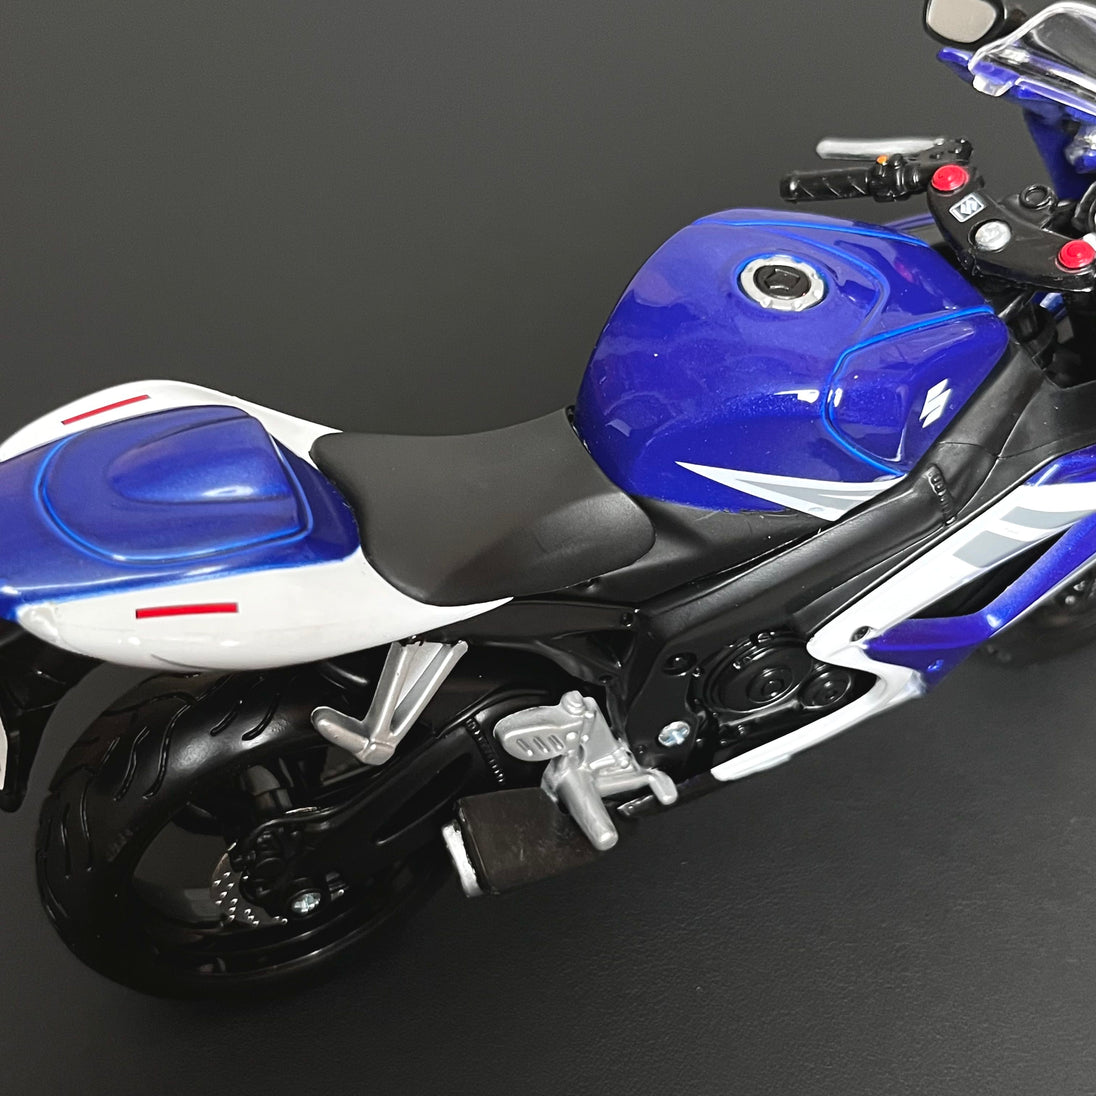 Suzuki GSX-R750 Diecast Bike 1:12 Motorcycle Model By Maisto